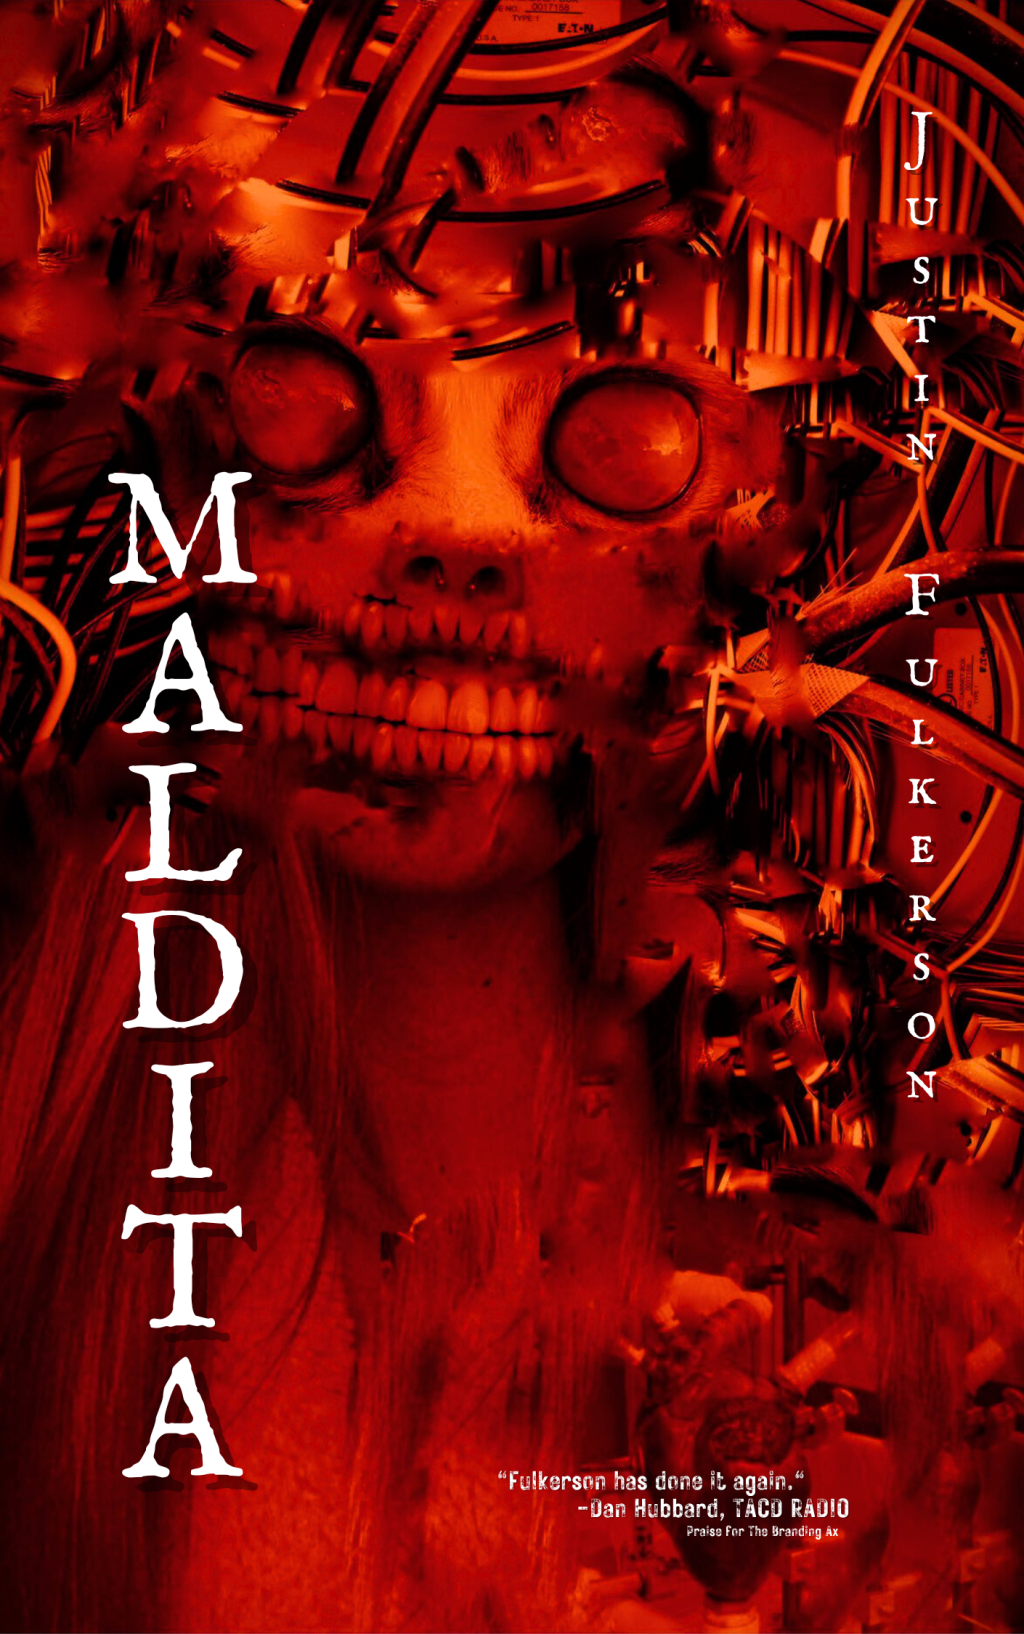 Cover Reveal: MALDITA